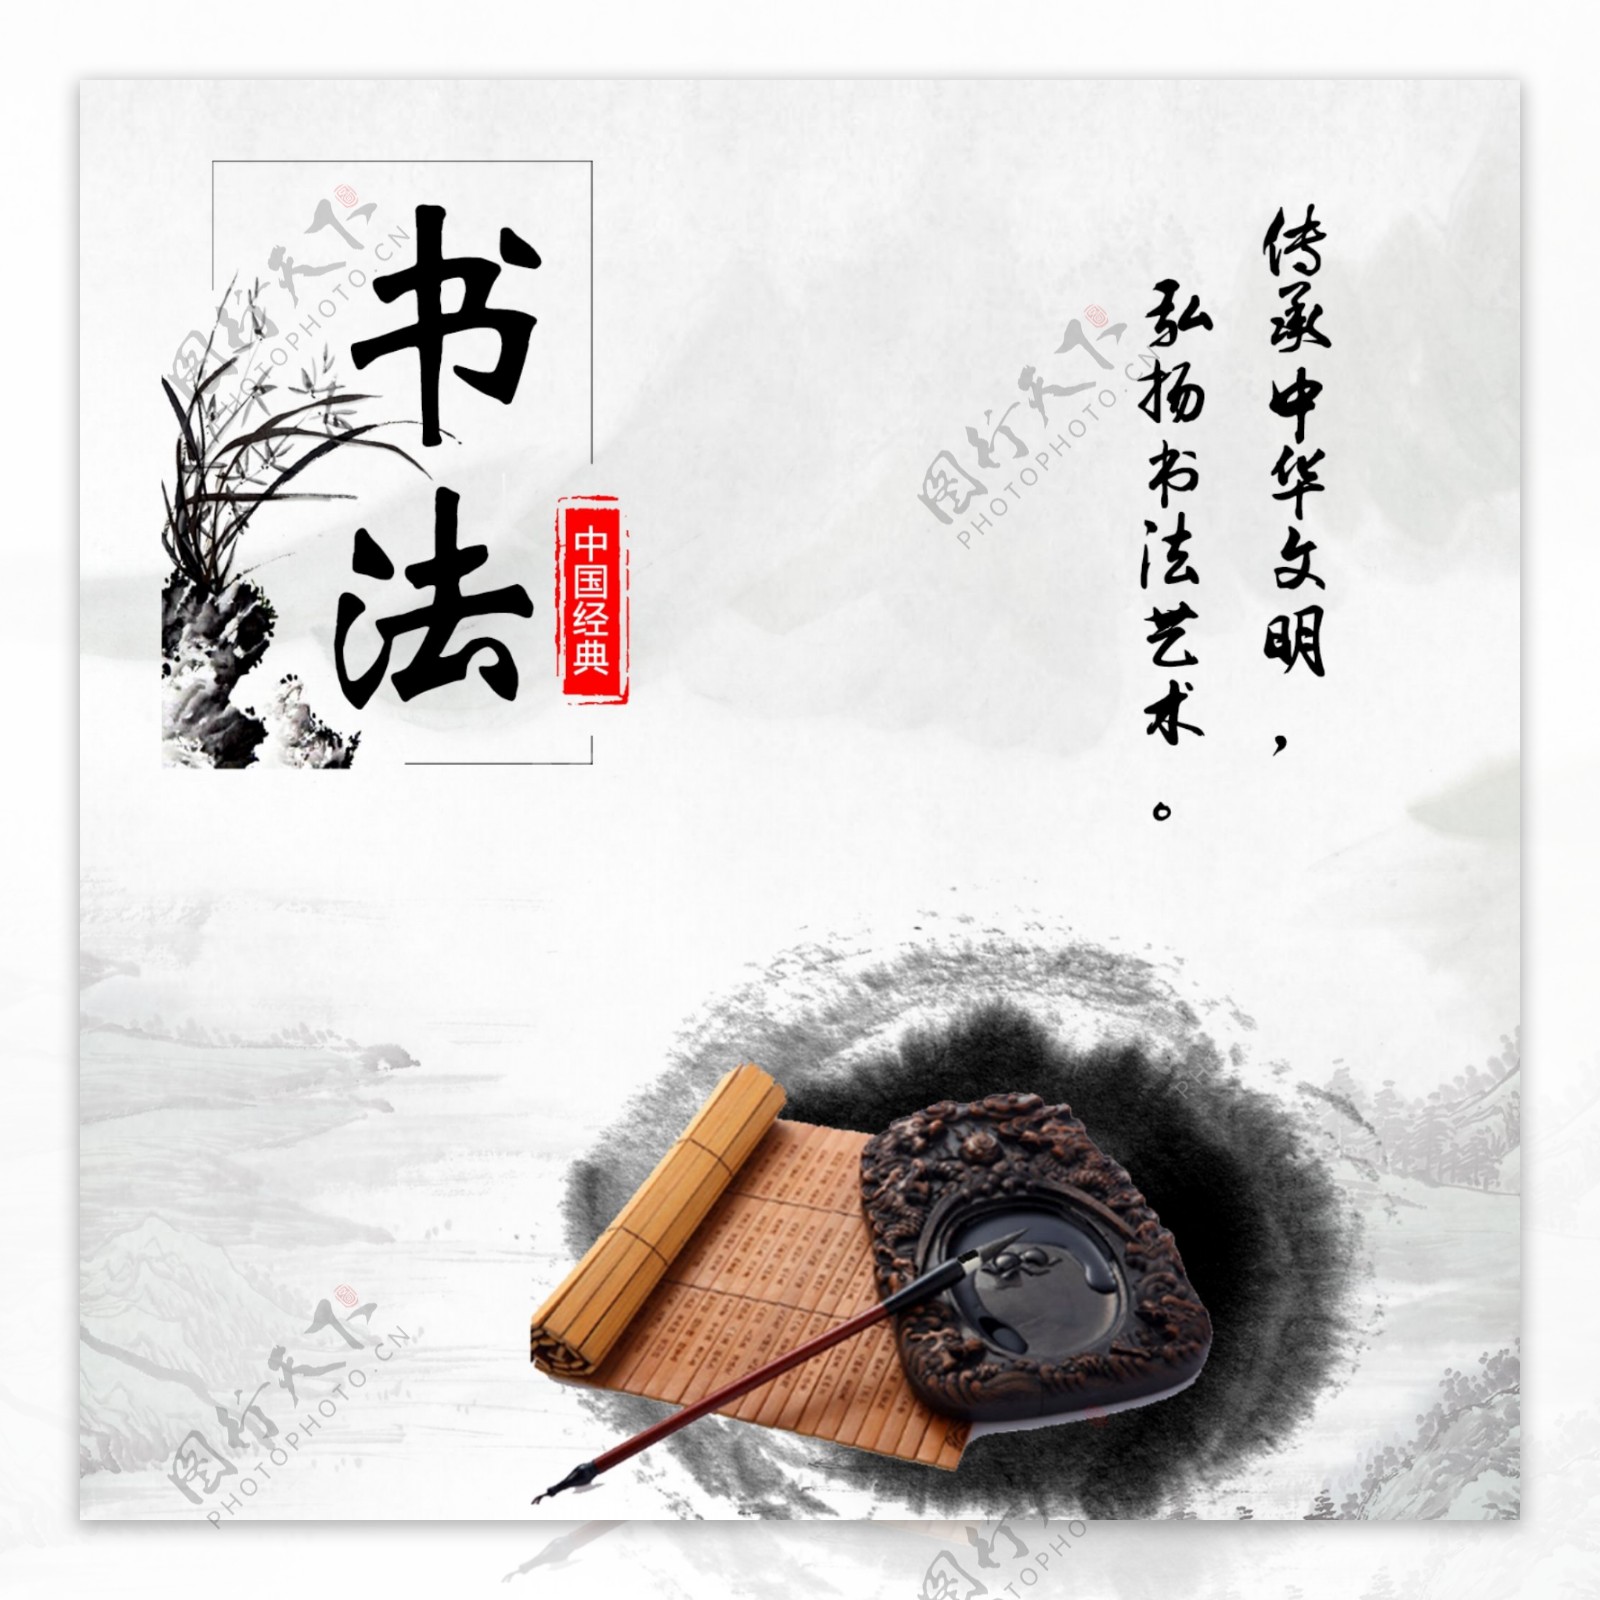 中国风书法海报设计psd下载